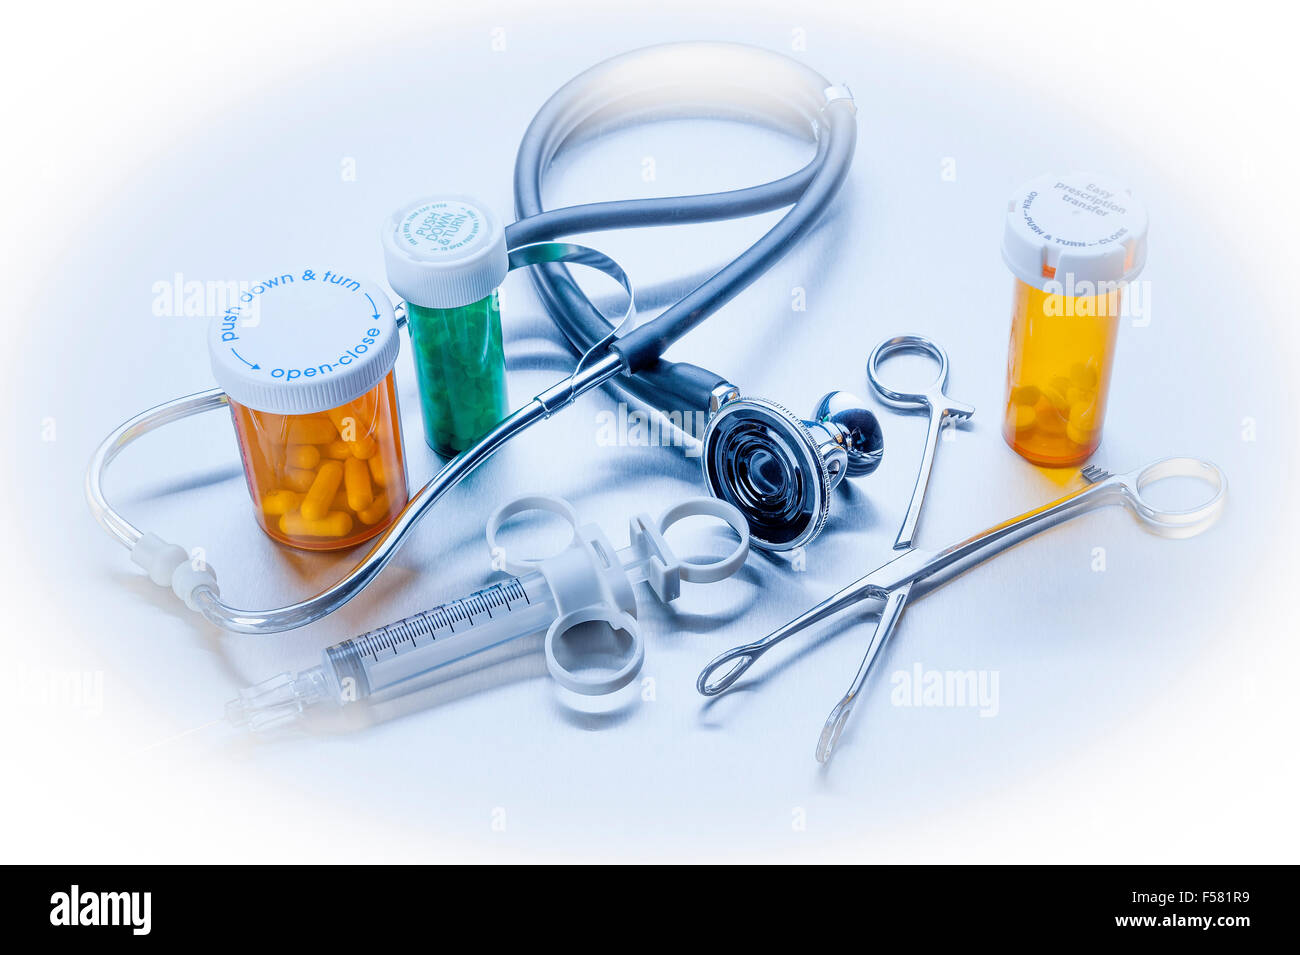 Healthcare Medical objetos en azul Foto de stock